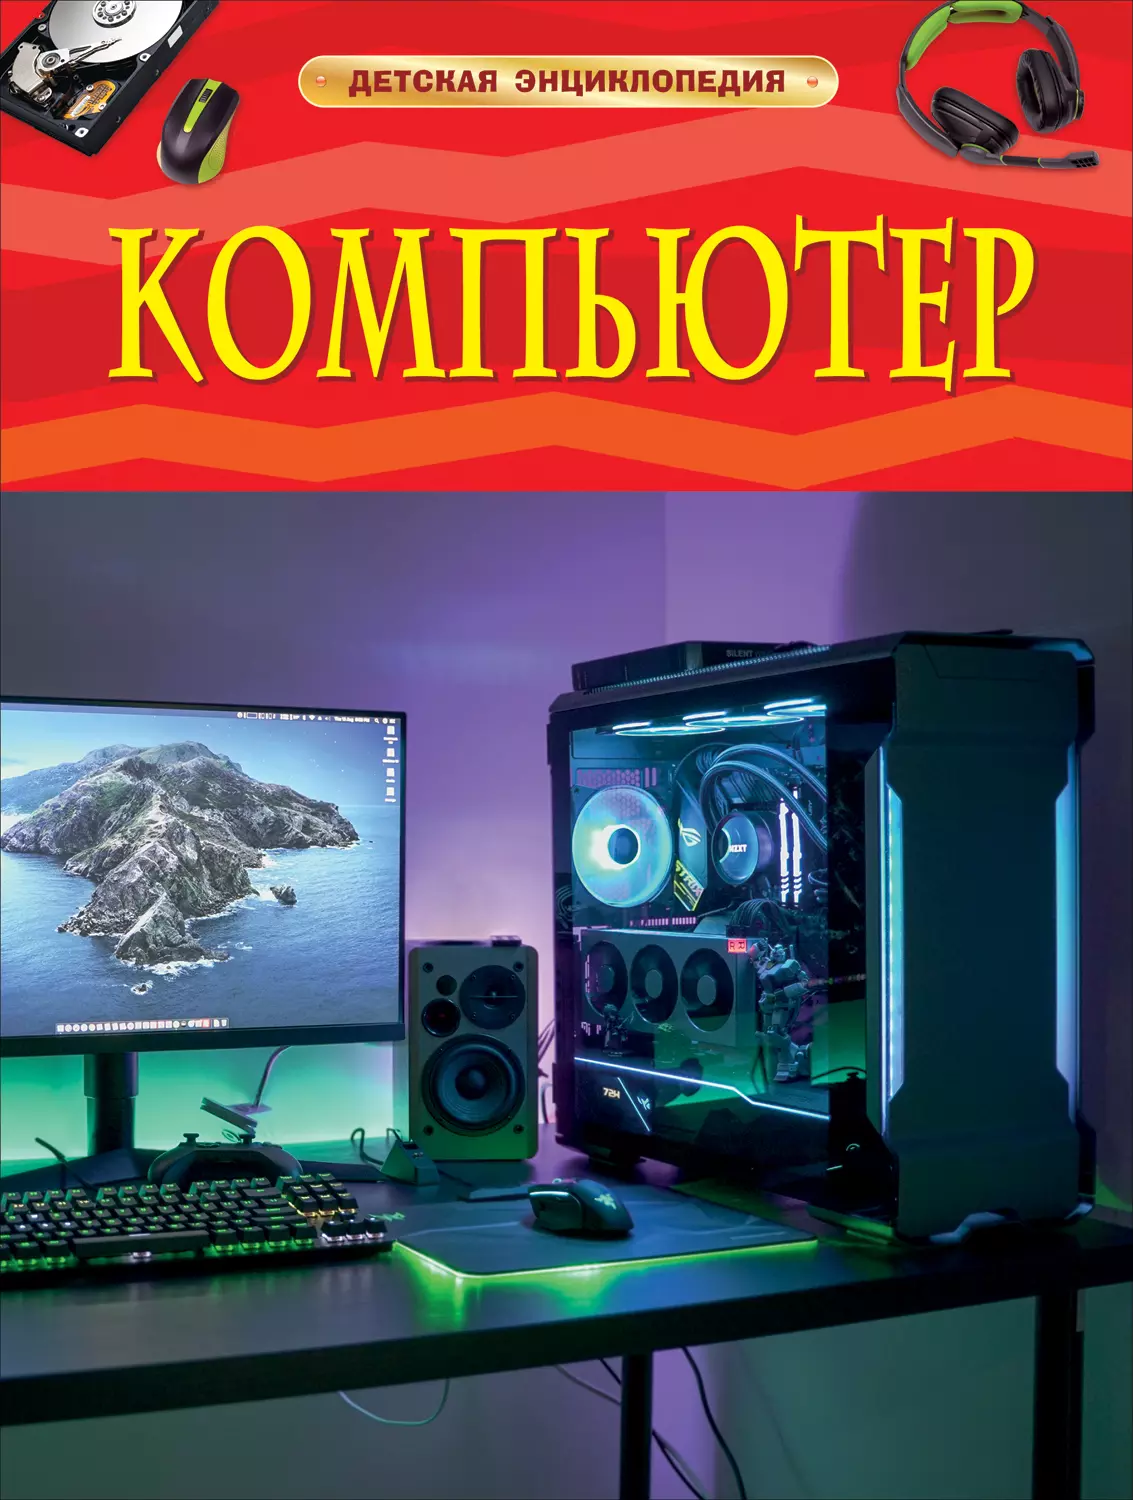 Детская энциклопедия Компьютер. изд. Росмэн